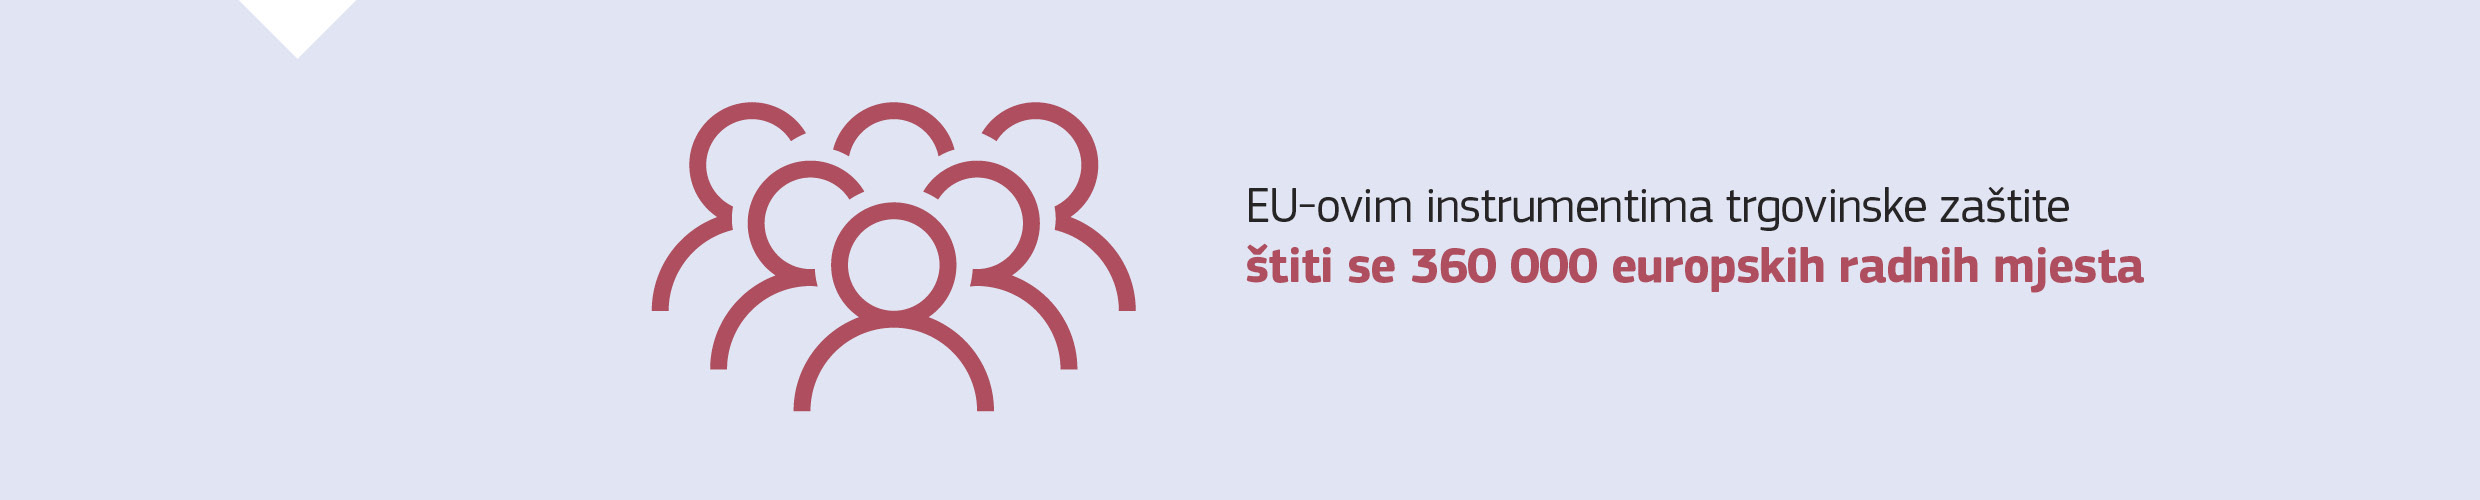 EU-ovim instrumentima trgovinske zaštite štiti se 360 000 europskih radnih mjesta